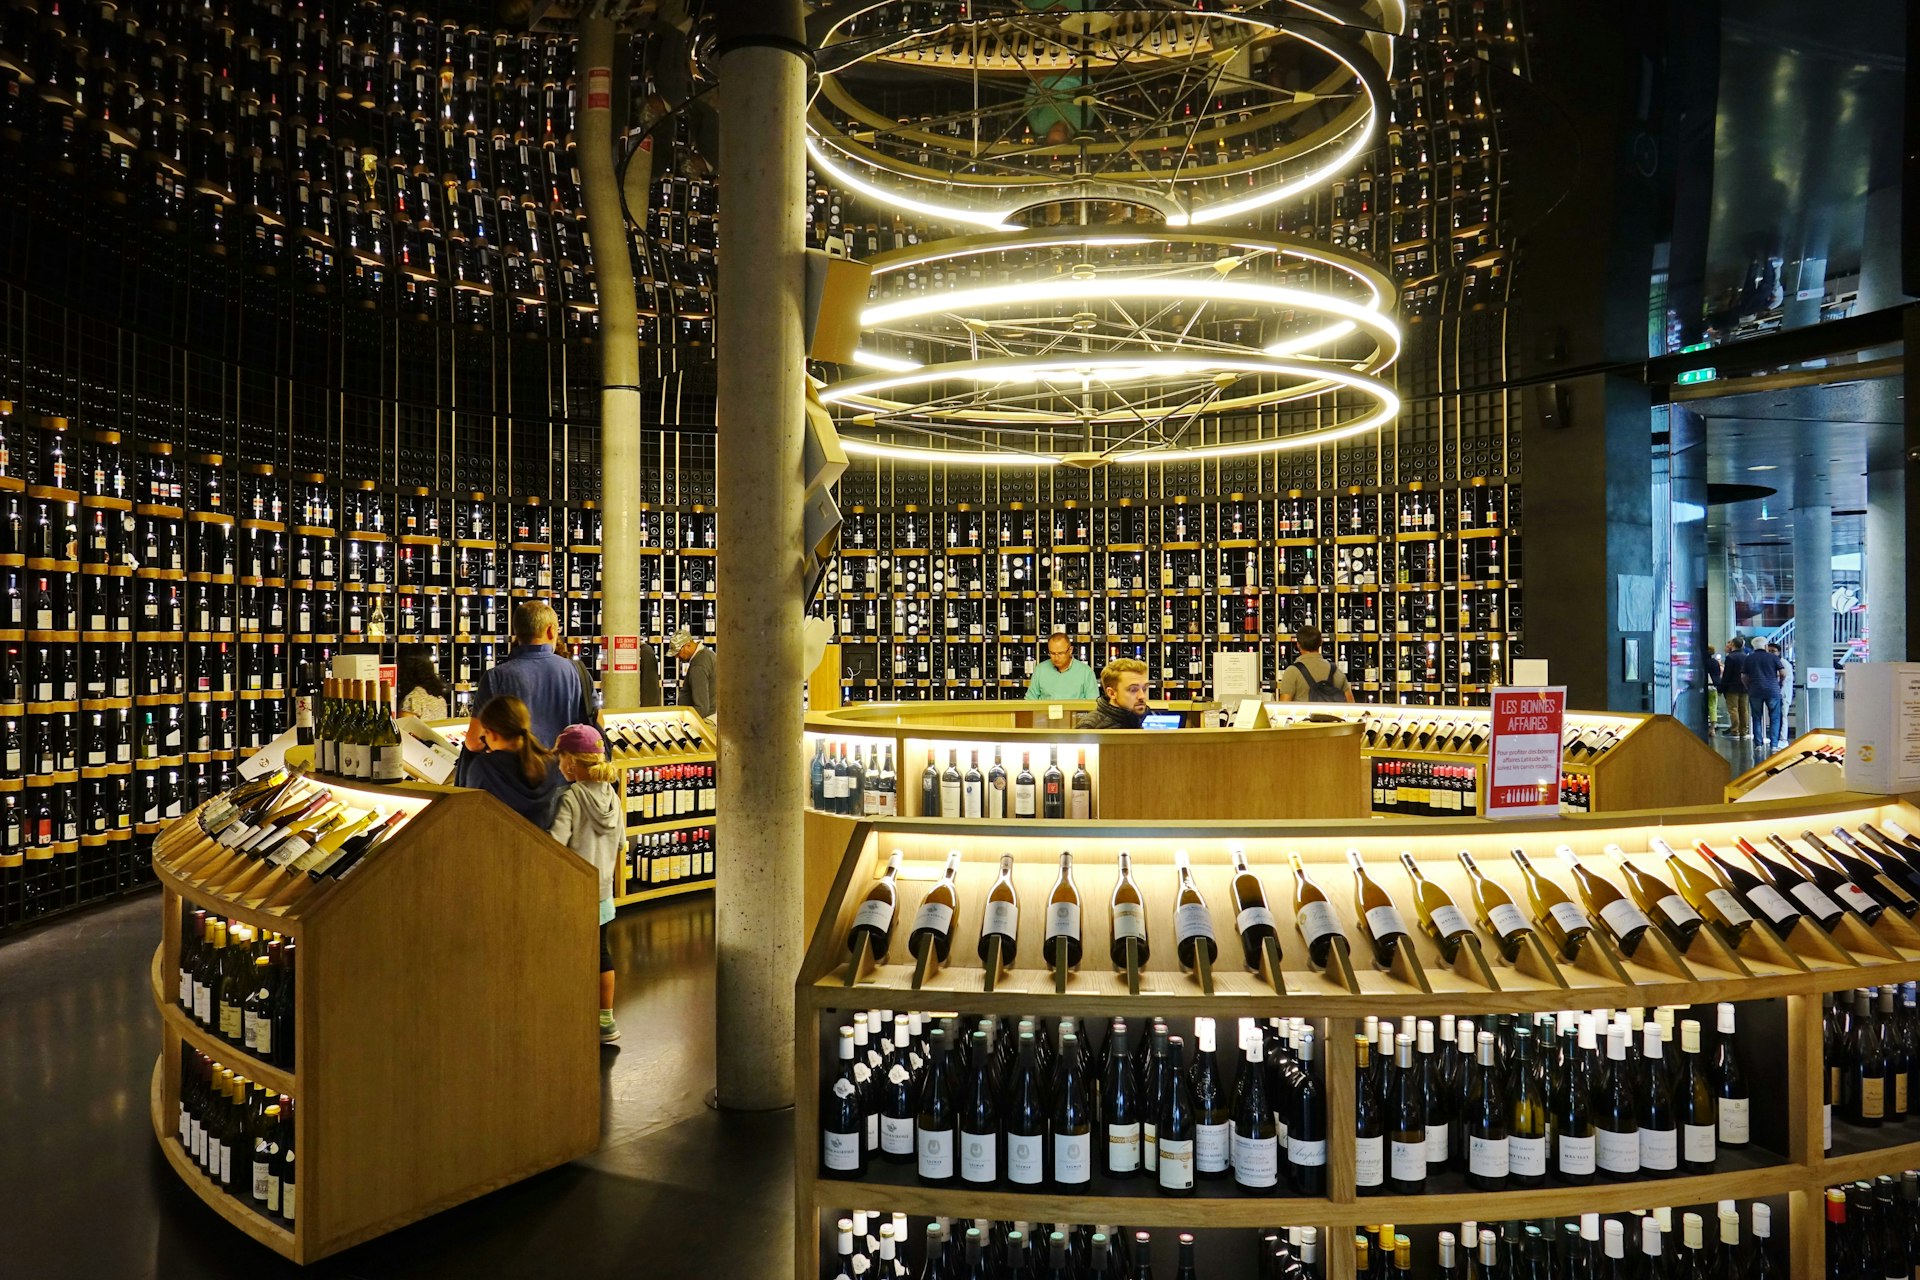 Floor-to-ceiling shelving displays hundreds of wine bottles for sale in the shop inside La Cité du Vin wine museum.